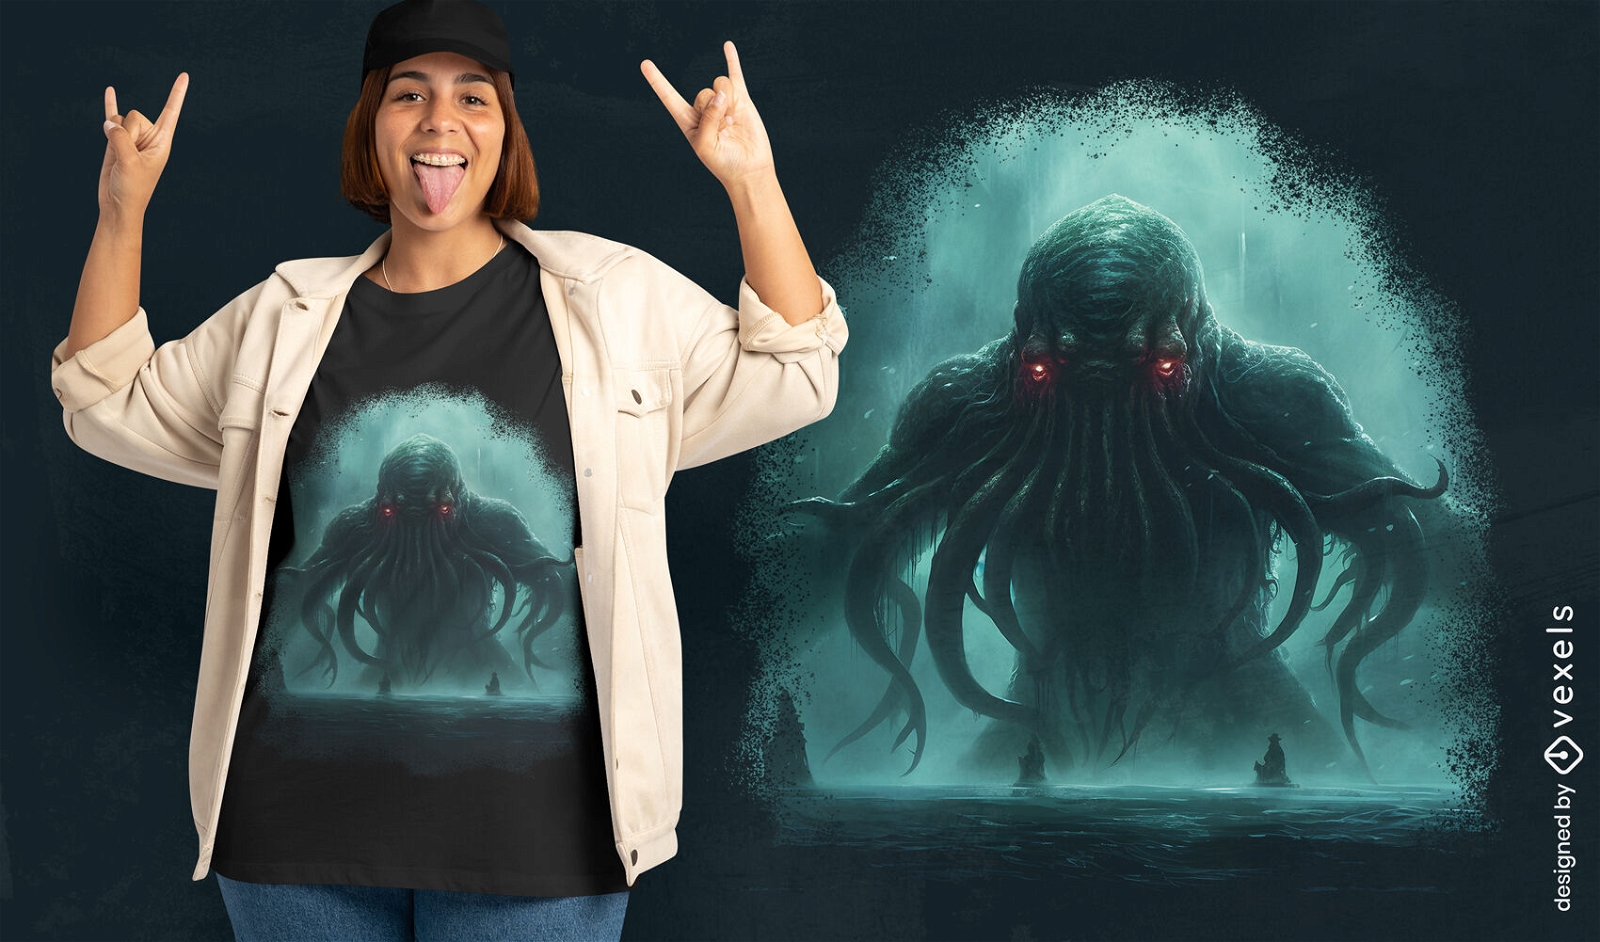 Diseño de camiseta del monstruo mítico Cthulhu.